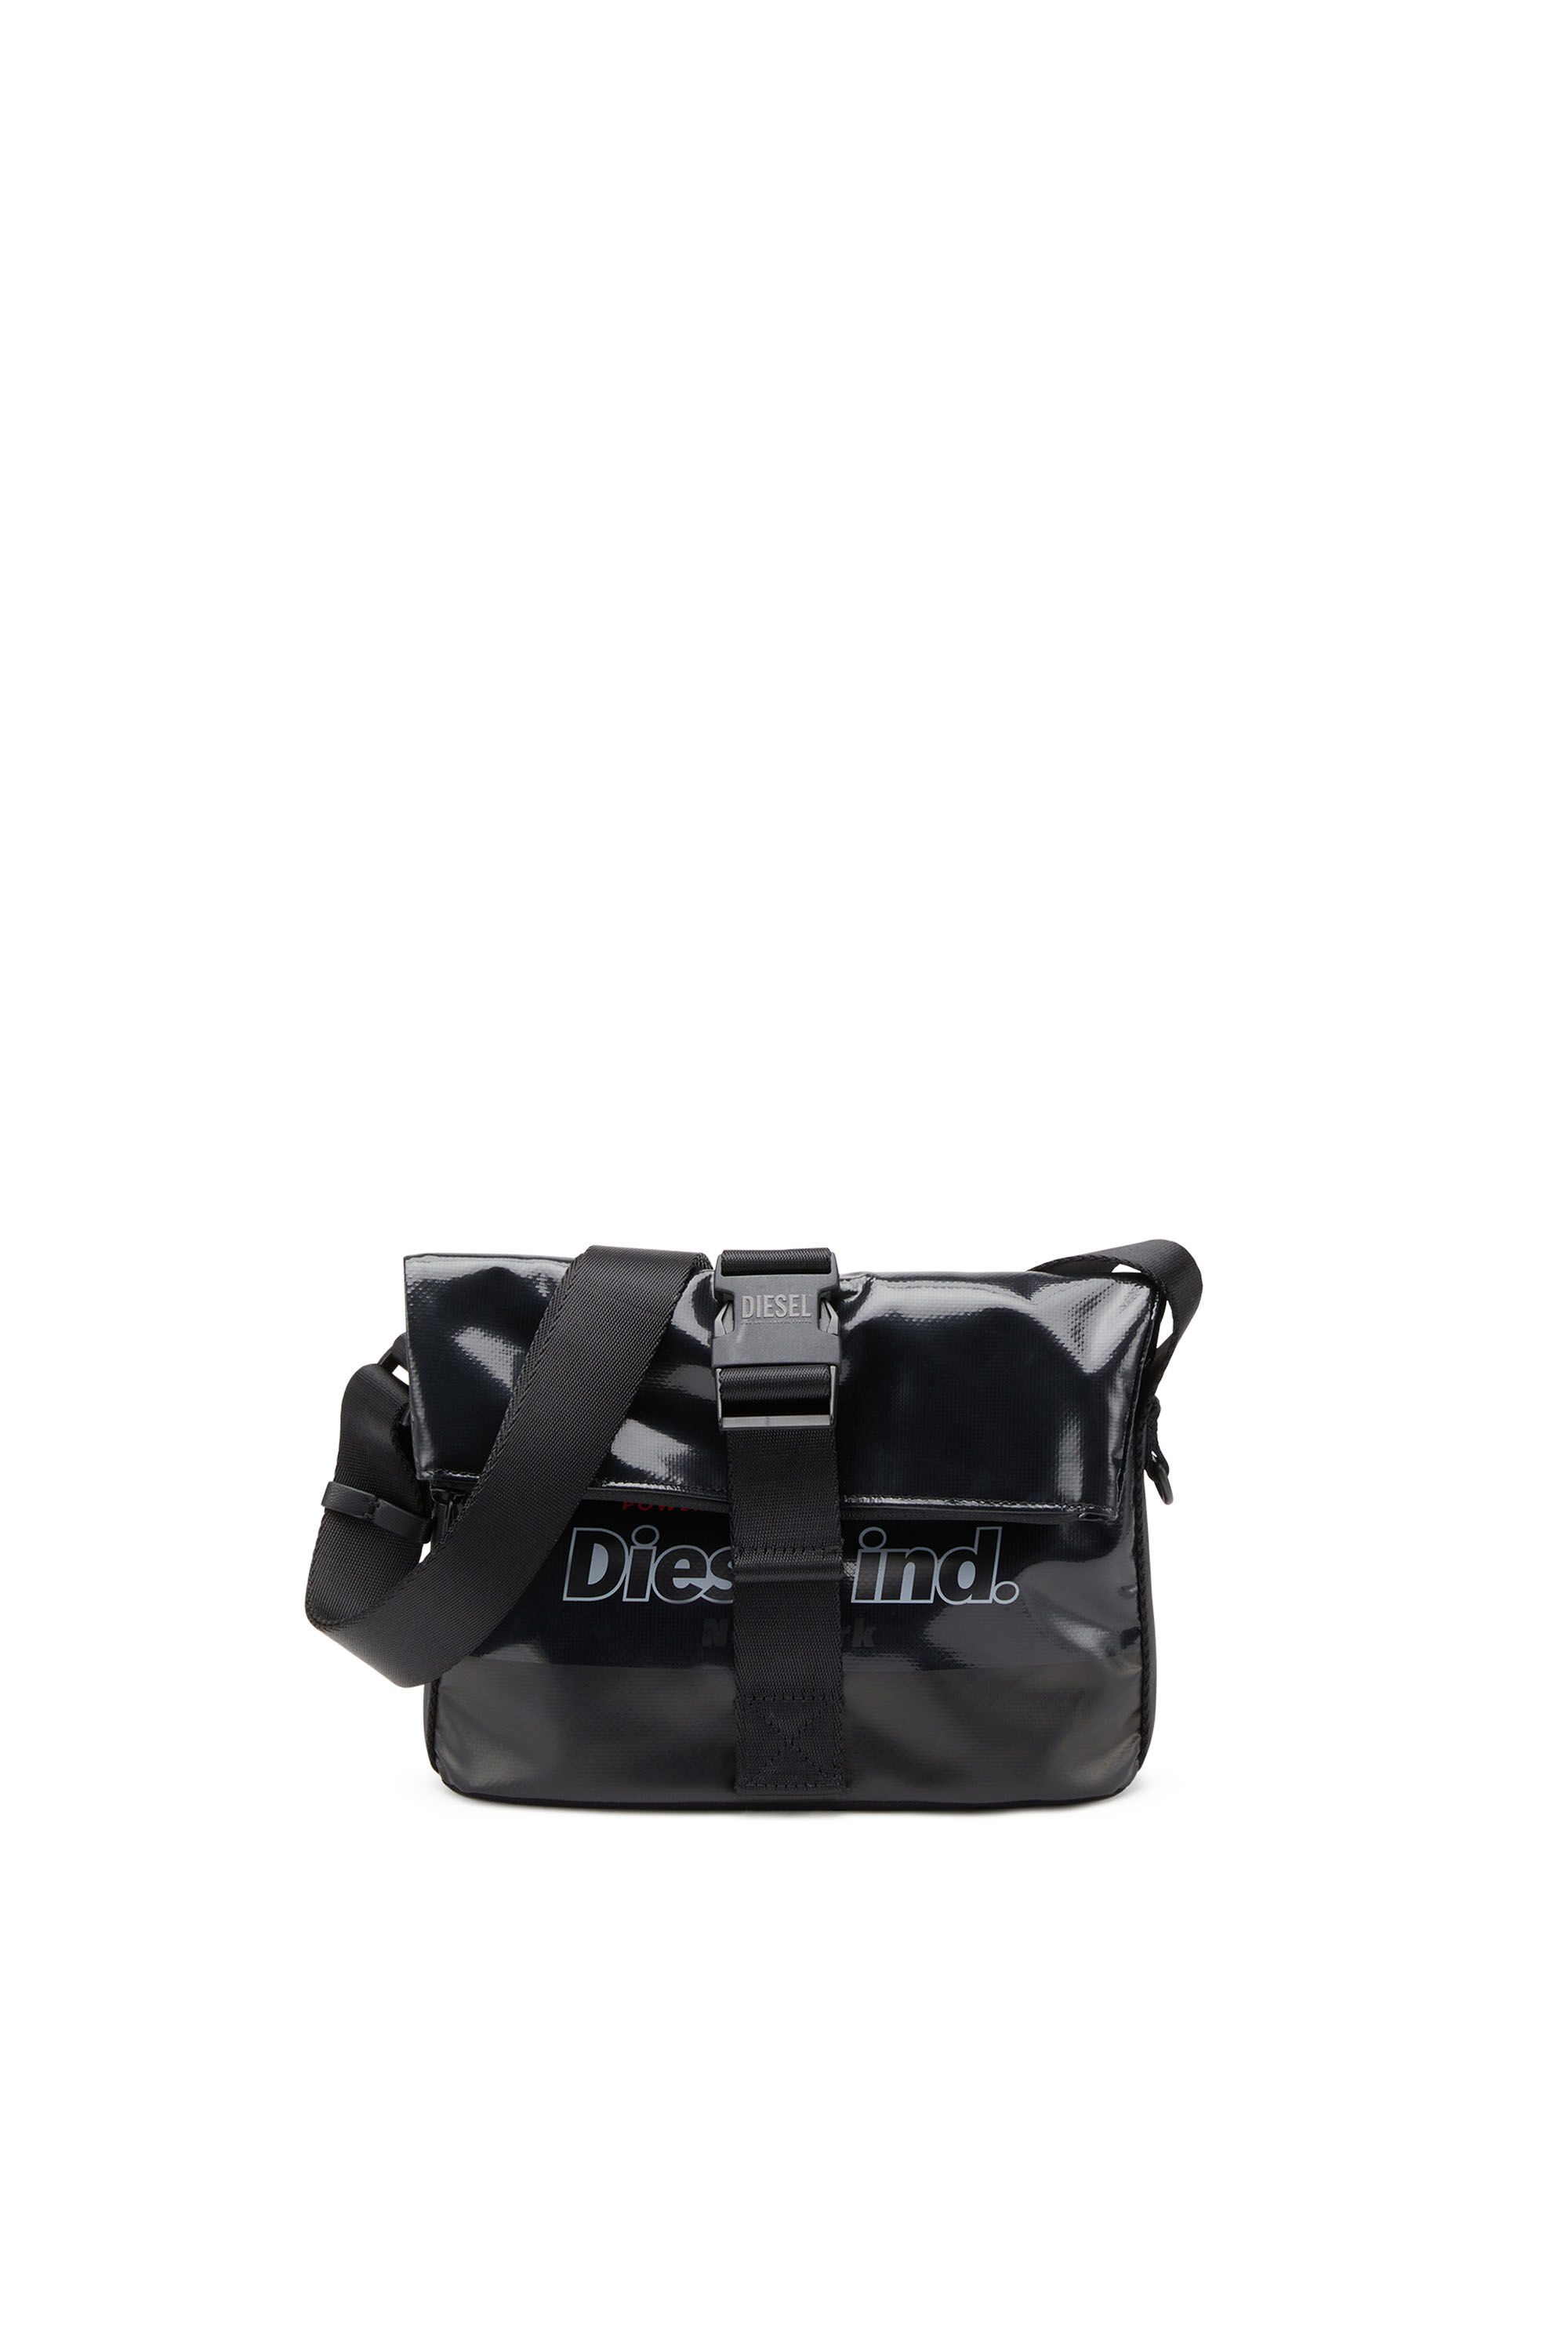 Diesel - TRAP/D SHOULDER BAG S, Black - Image 2